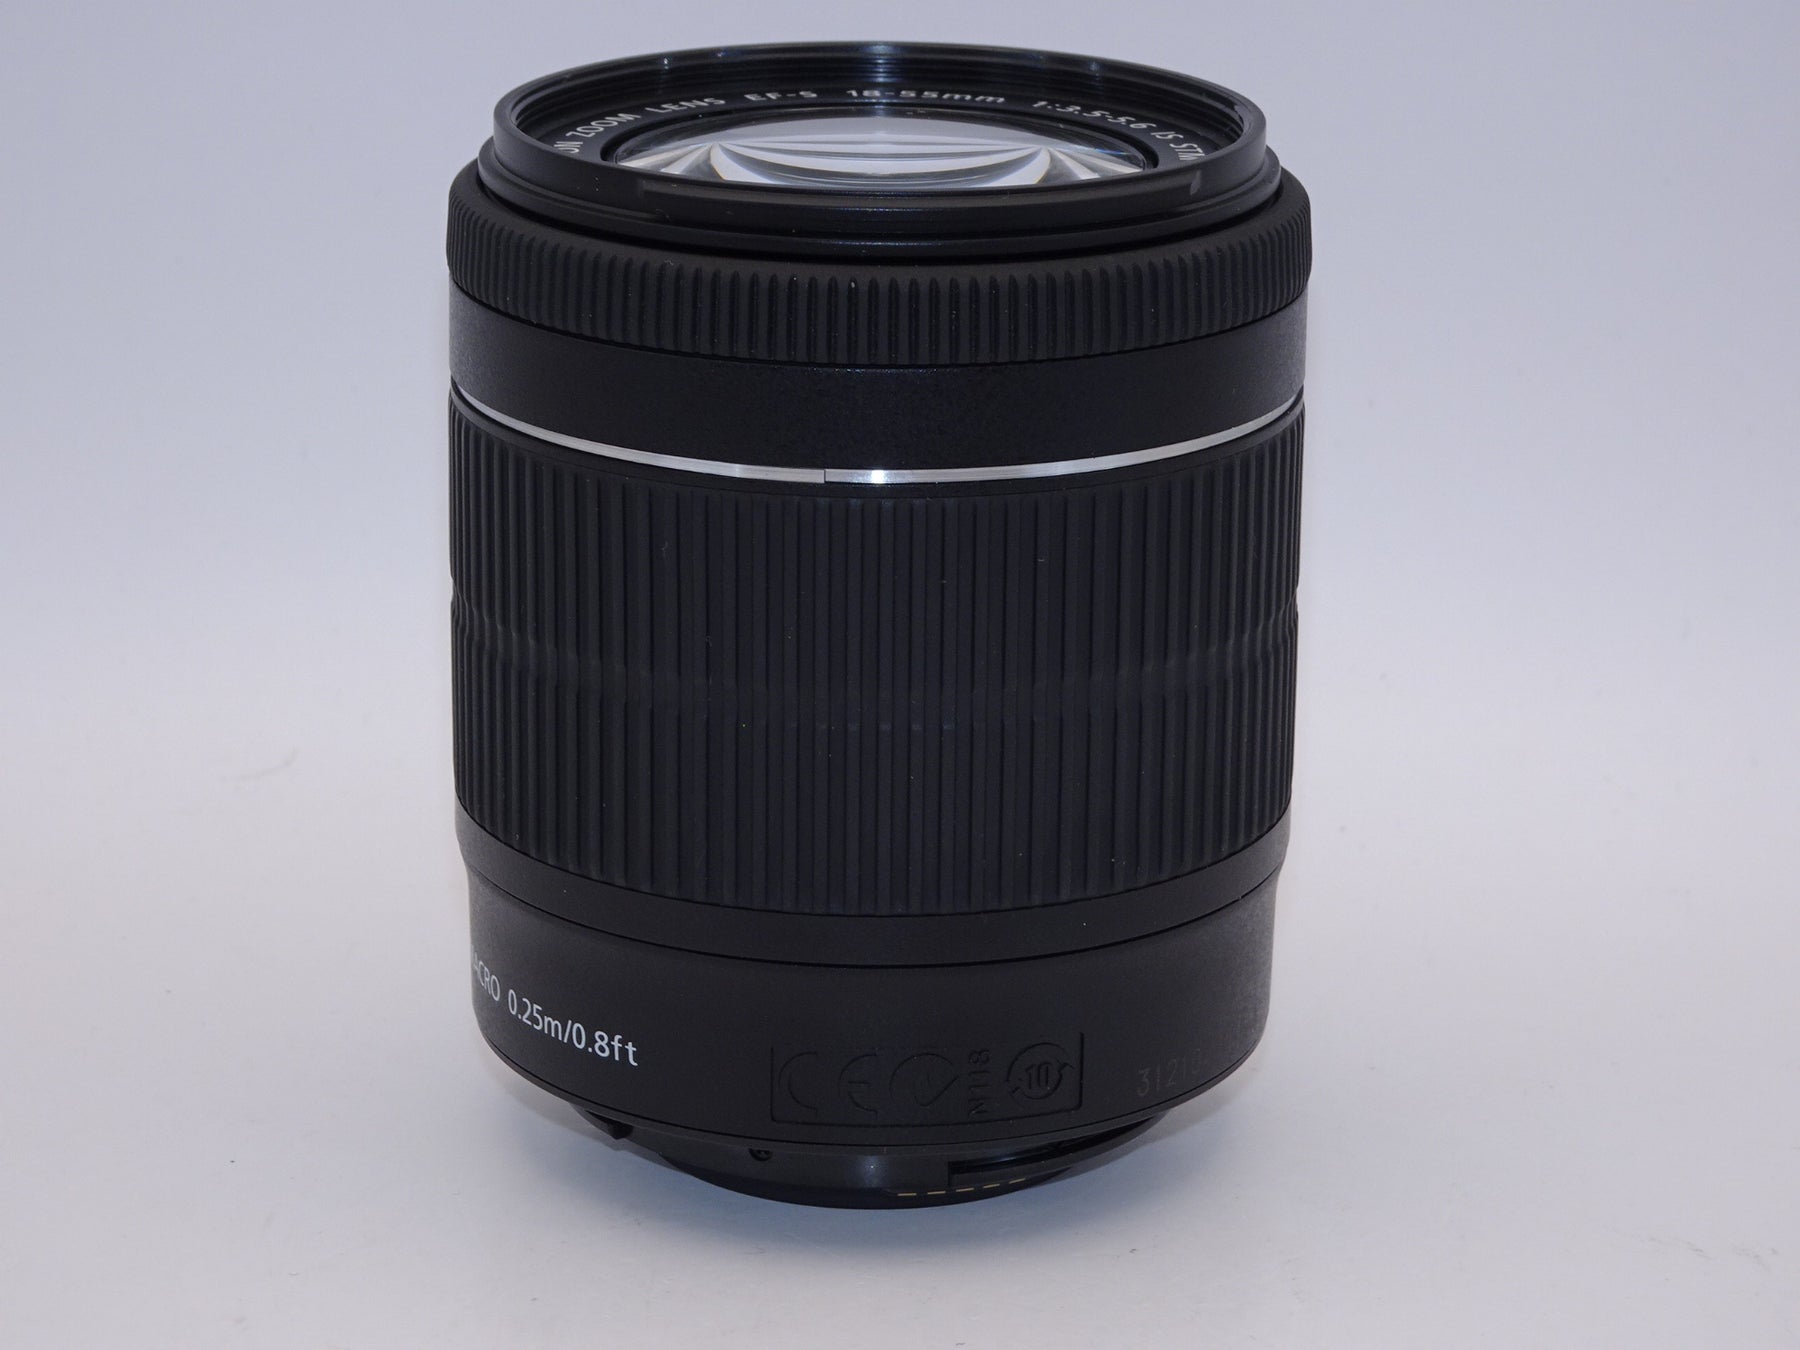 【外観特上級】Canon 標準ズームレンズ EF-S18-55mm F3.5-5.6 IS STM